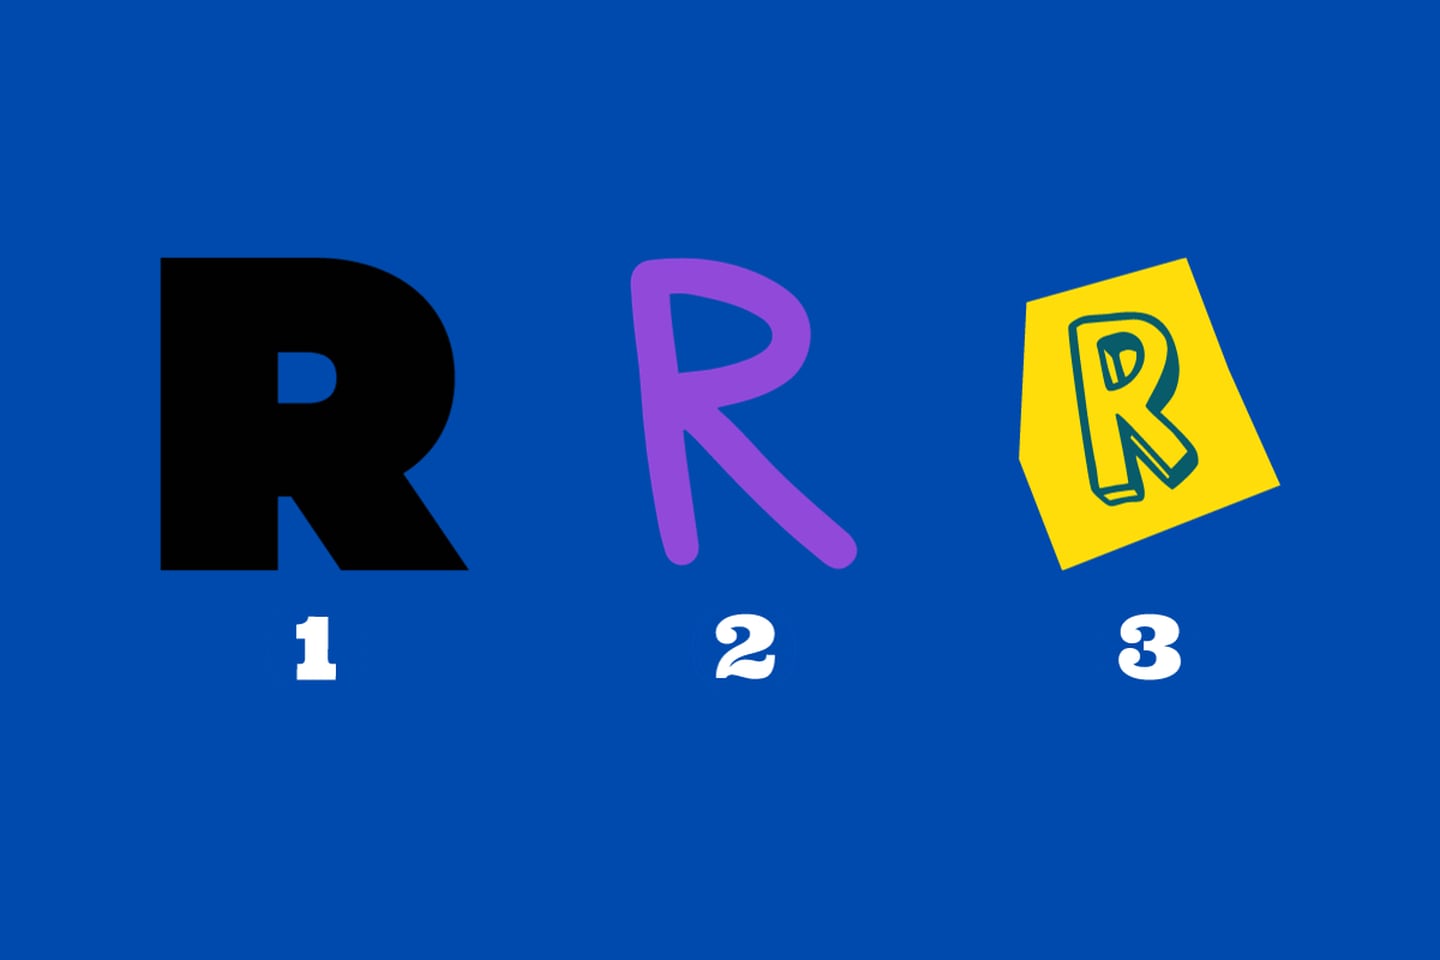 En este test de personalidad hay tres letras r: la primera muy robusta, la segunda más relajada y la tercera con efecto 3D.